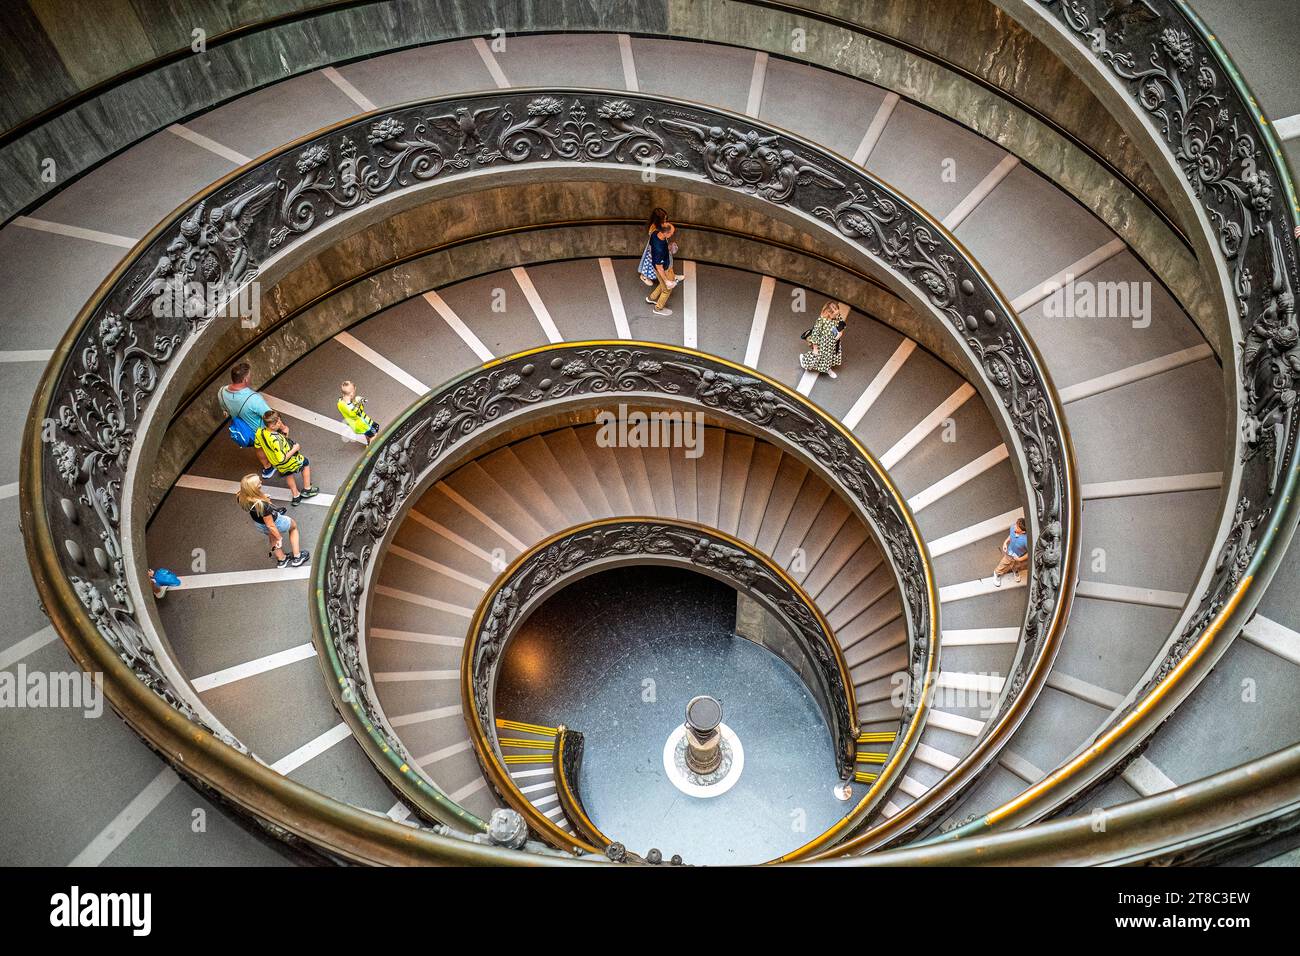 Escalier en colimaçon dans le Musée du Vatican à Rome Italie Banque D'Images